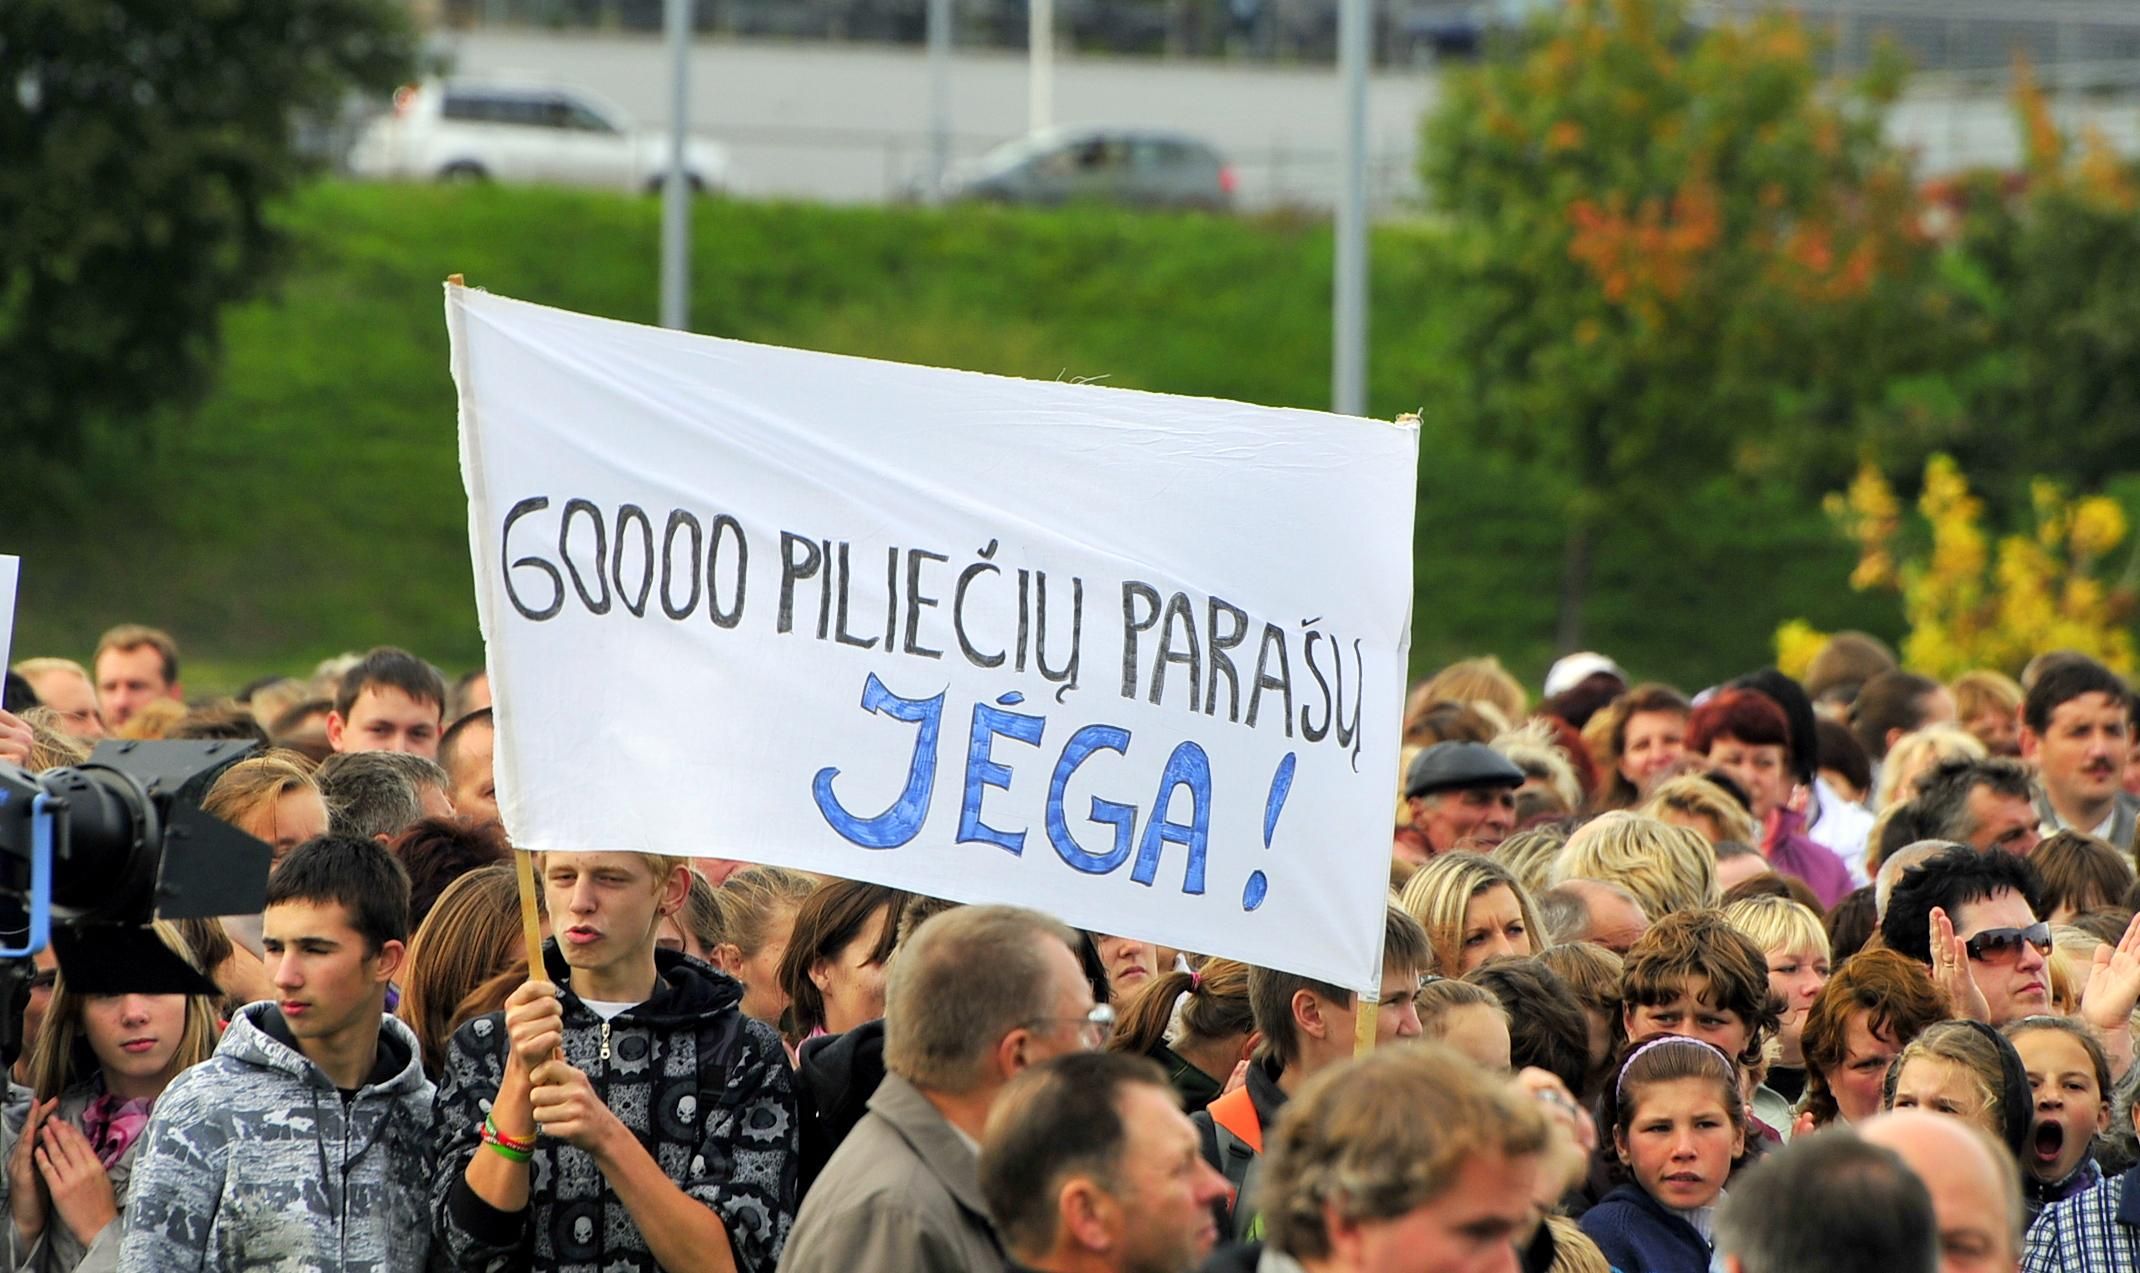 Митинги протеста против "бульдозерной политике" в системе просвещения - это просто форма досуга такая у представителей национальных меньшинств Литвы? Фото из архива "Обзора".